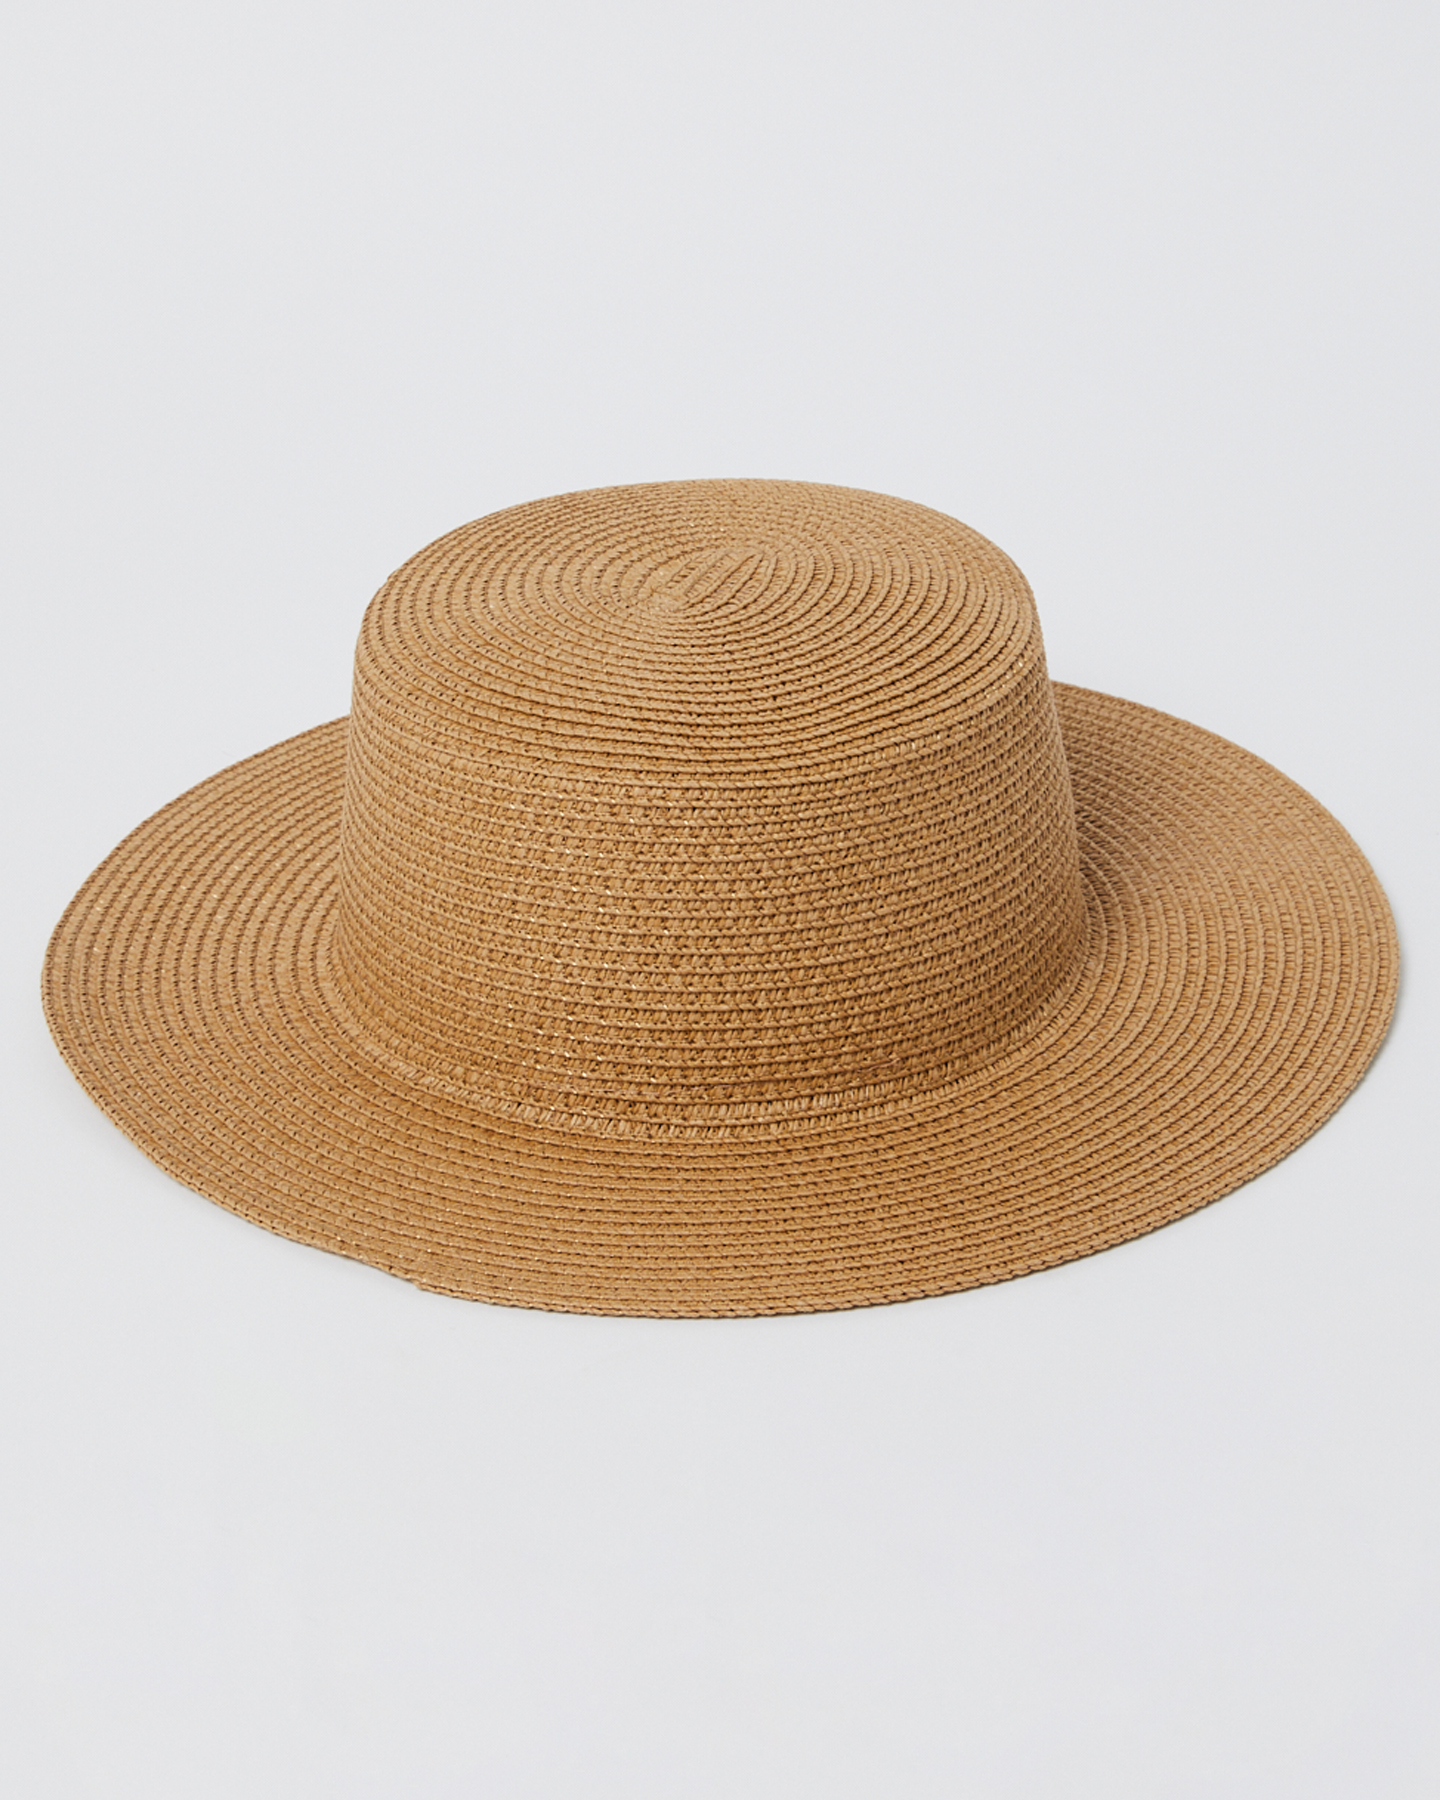 Confetti Cake - Straw Sun Hat for Women